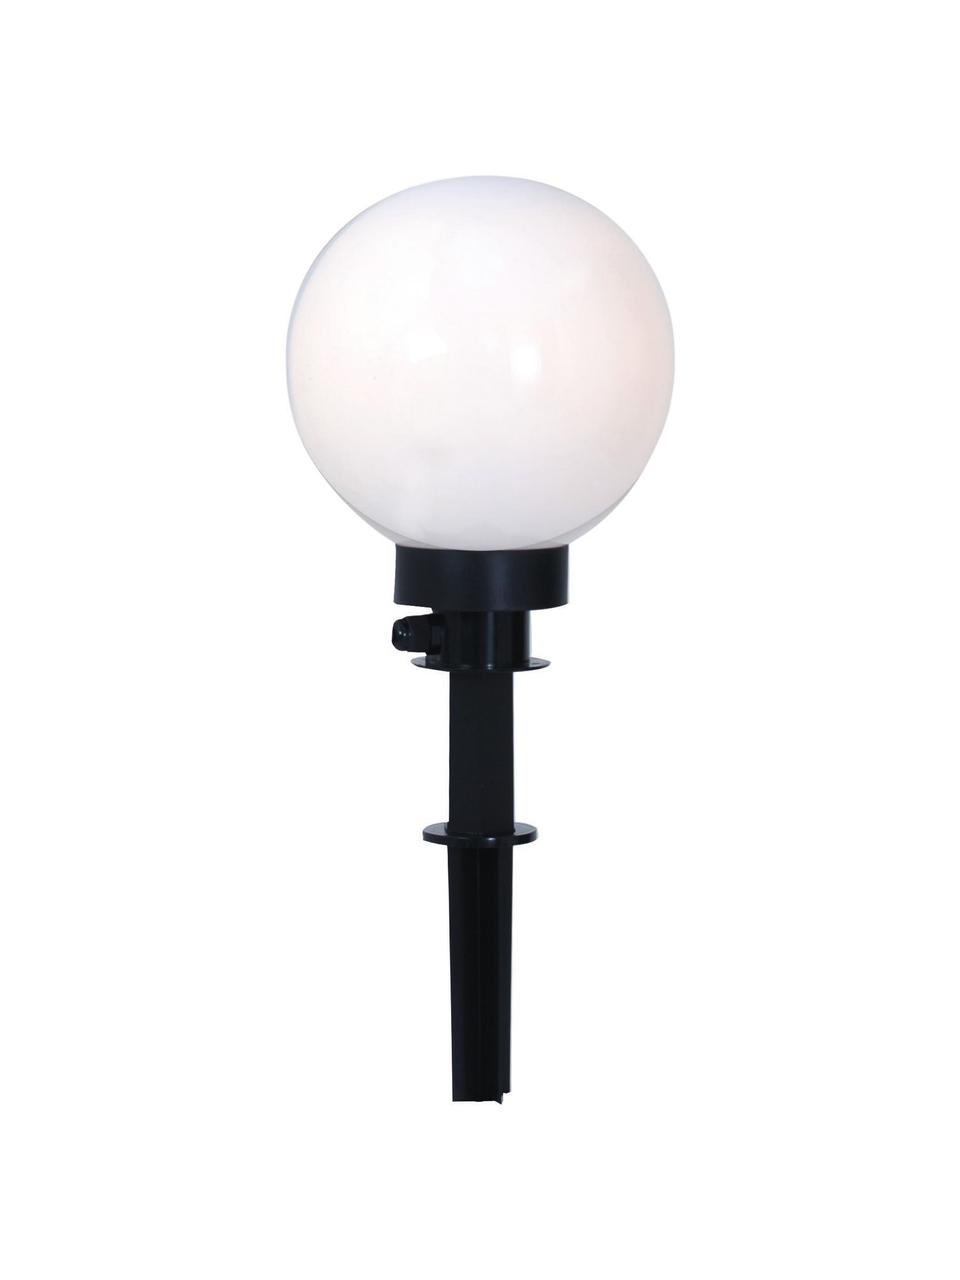 Bodenleuchte Ball mit Stecker, Weiß, Schwarz, Ø 20 x H 64 cm